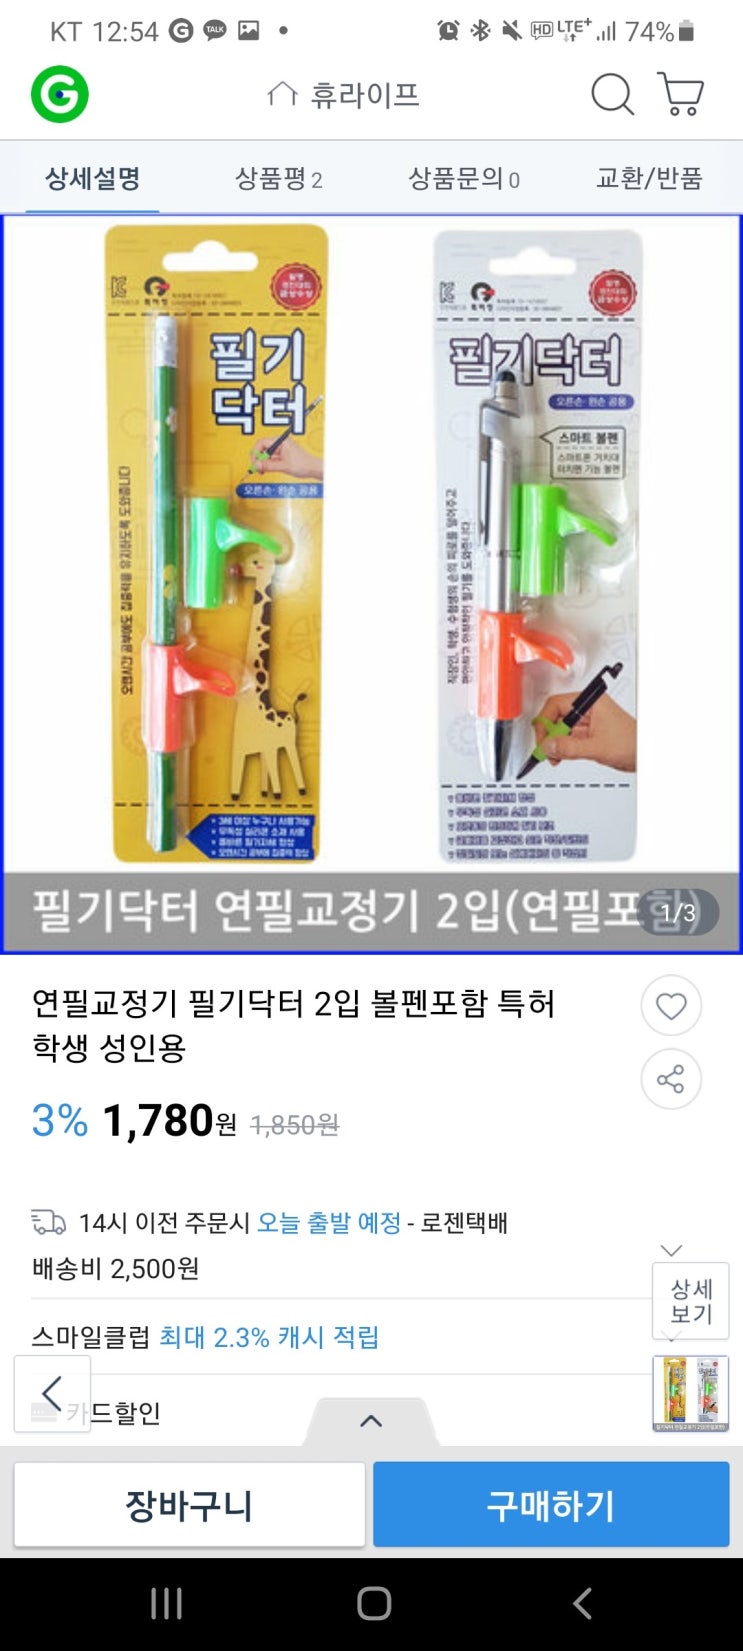 연필교정기 / 볼펜교정기 후기